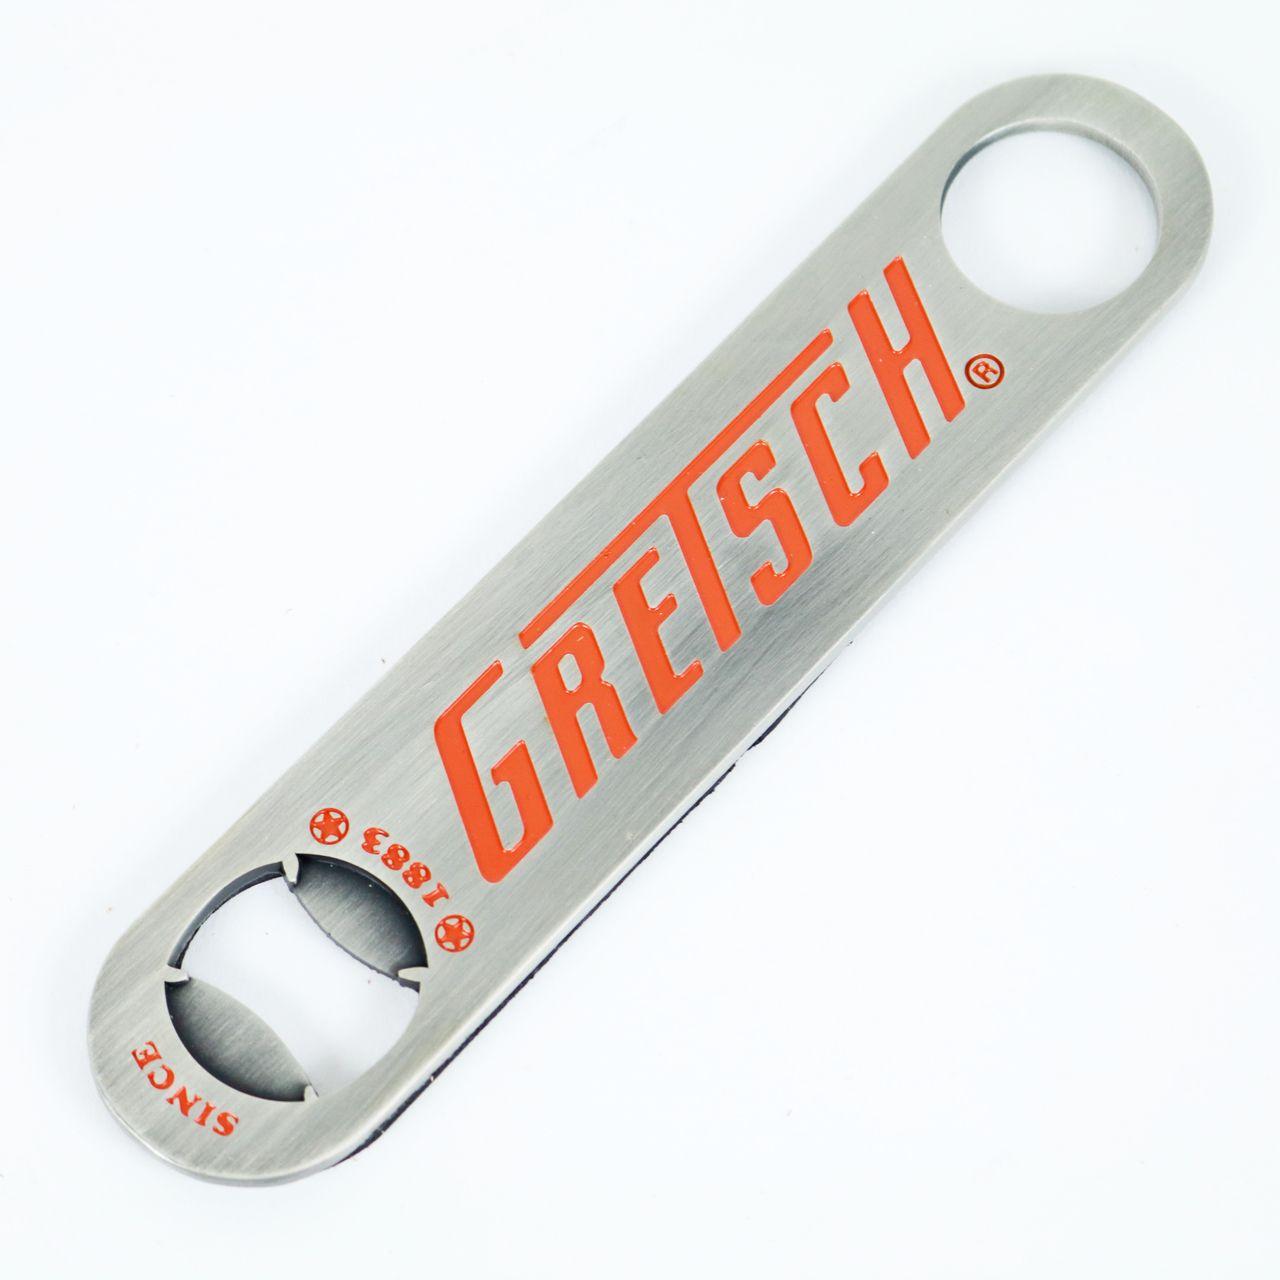 Gretsch Logo - Gretsch 60's Logo Beer Bottle Opener Metal with Magnet